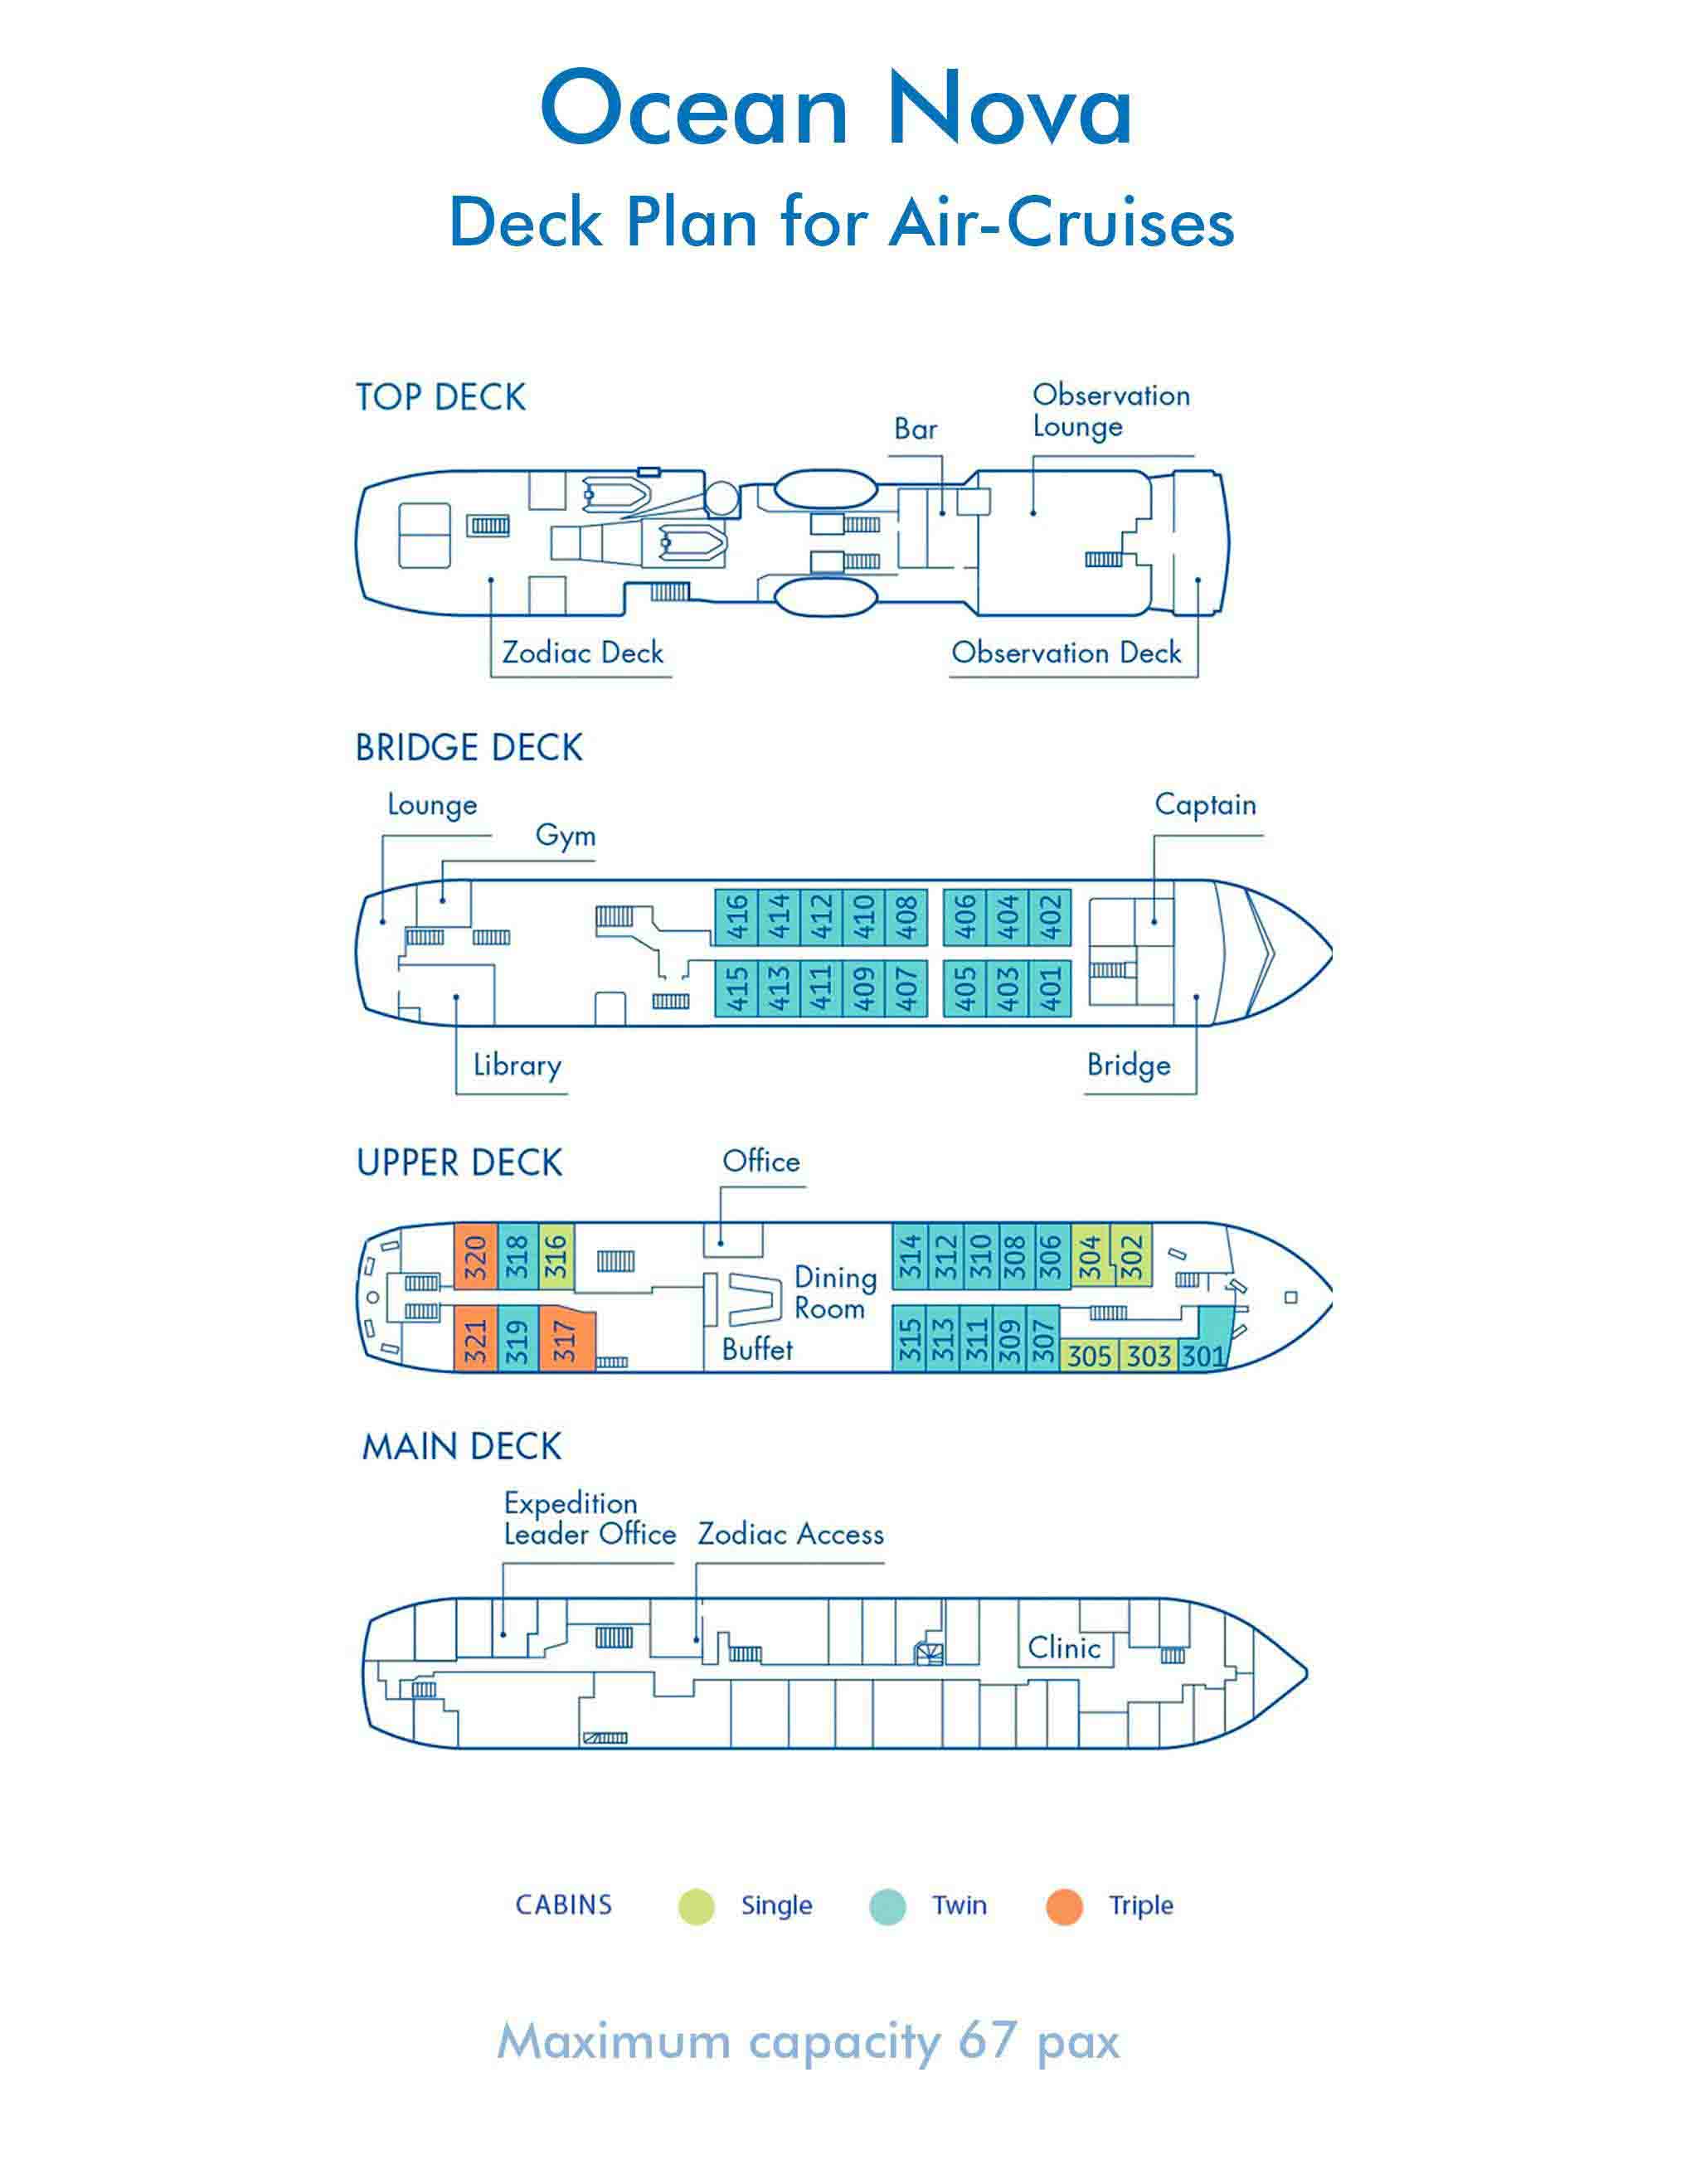 Ocean Nova | Deck plan | Air-Cruises